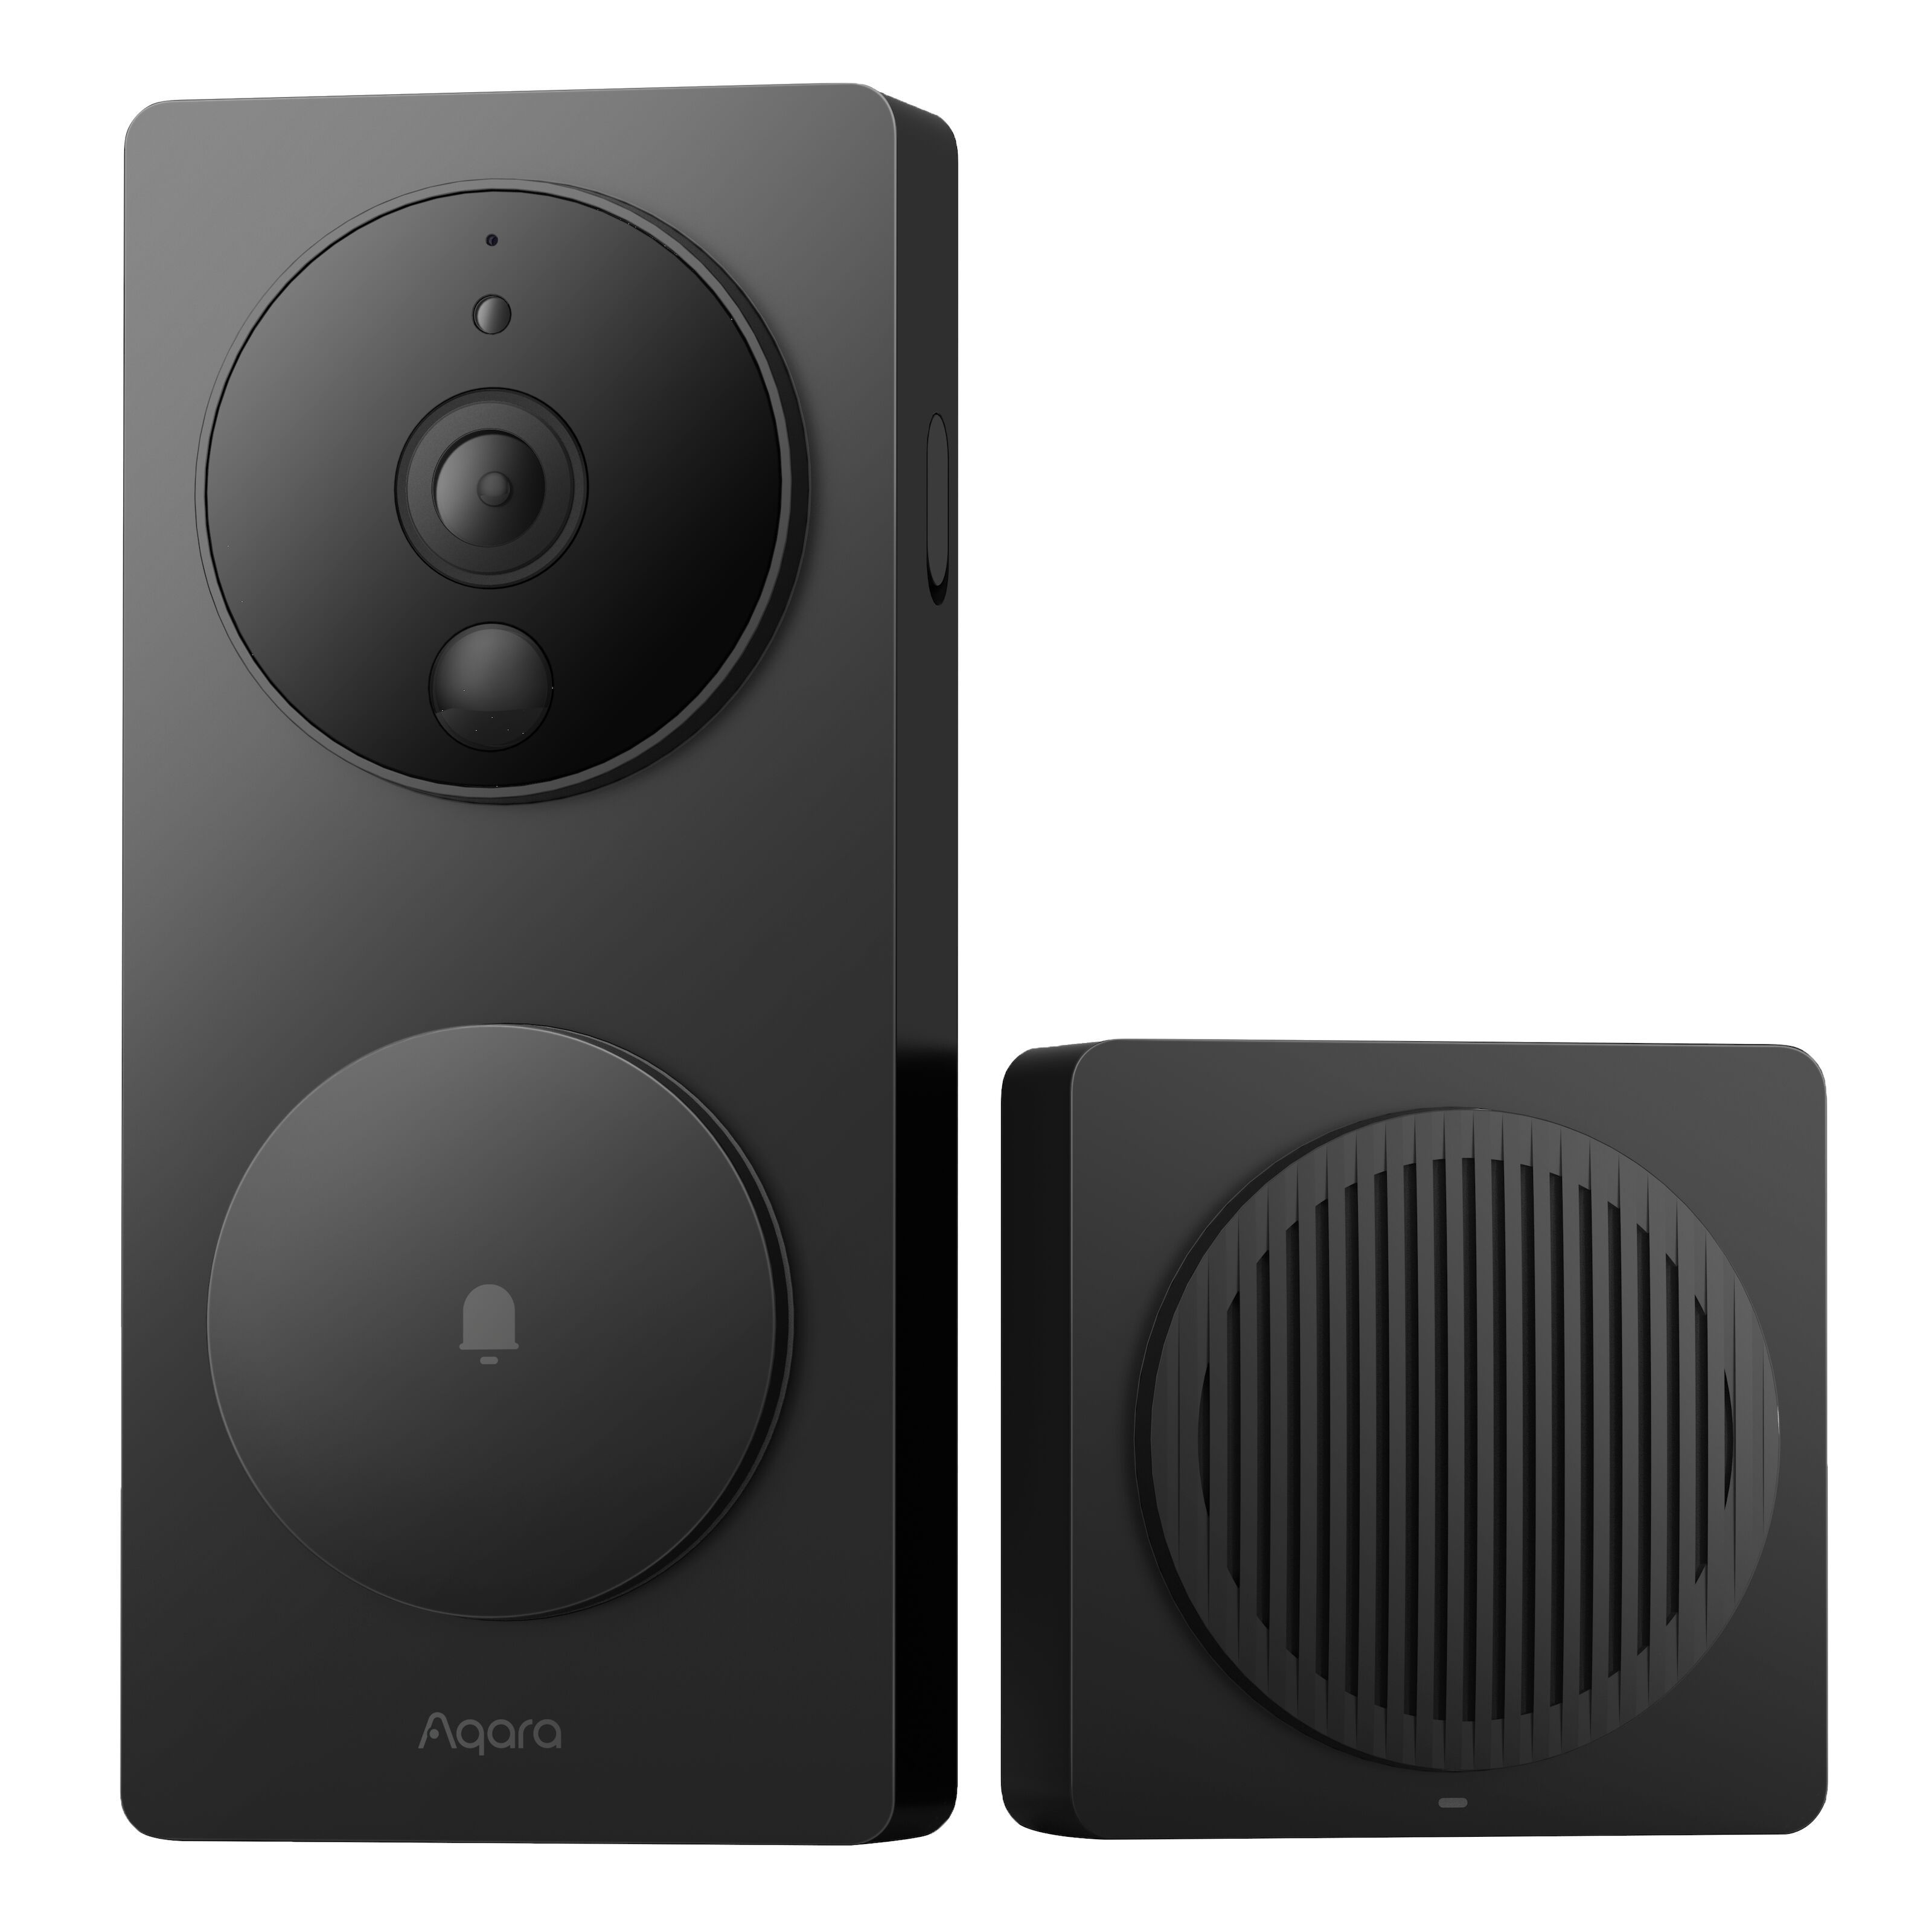  Smart Video Doorbell G4 - Smart dørklokke | Kjell.com